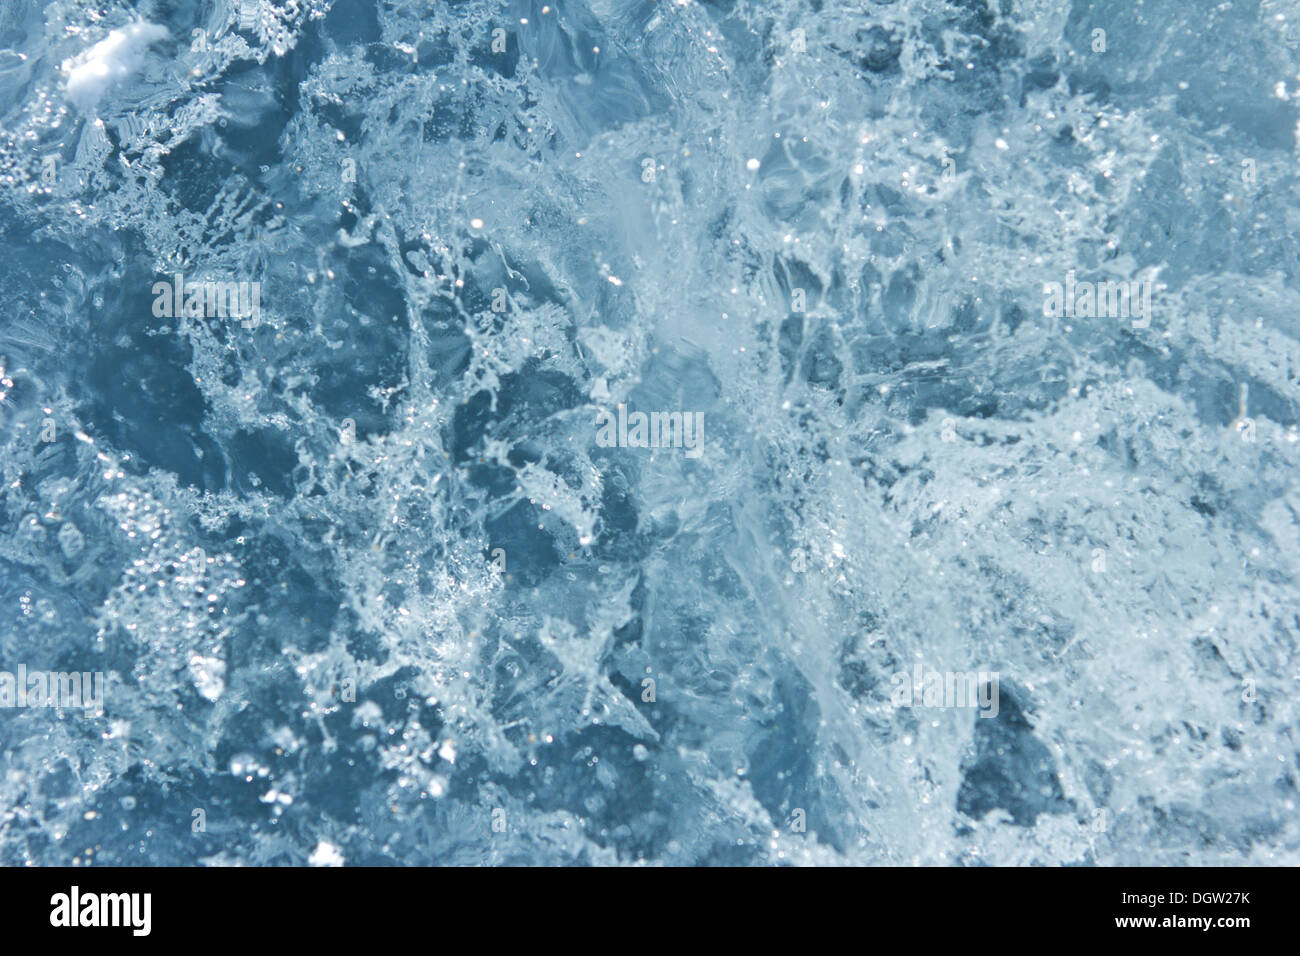 La texture de la glace de l'eau douce Banque D'Images